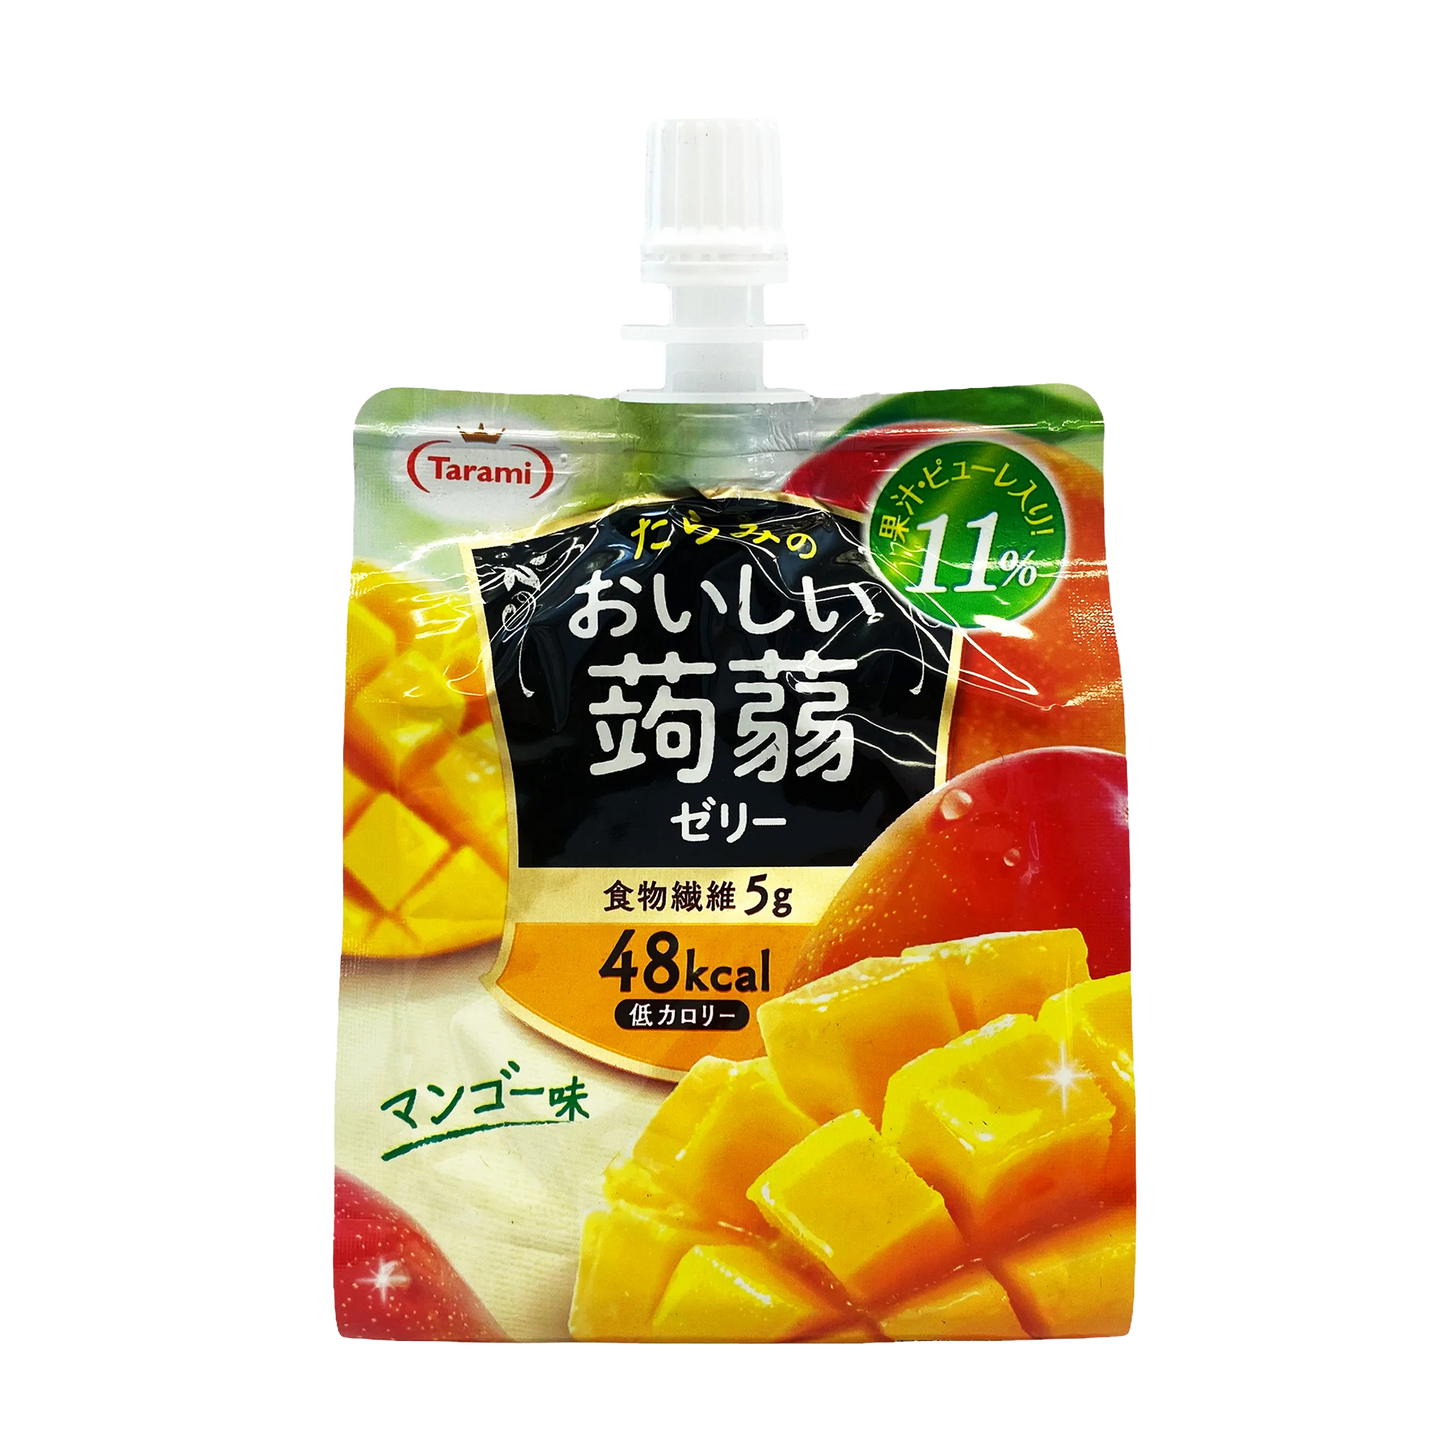 Tarami Soft Jelly Drink